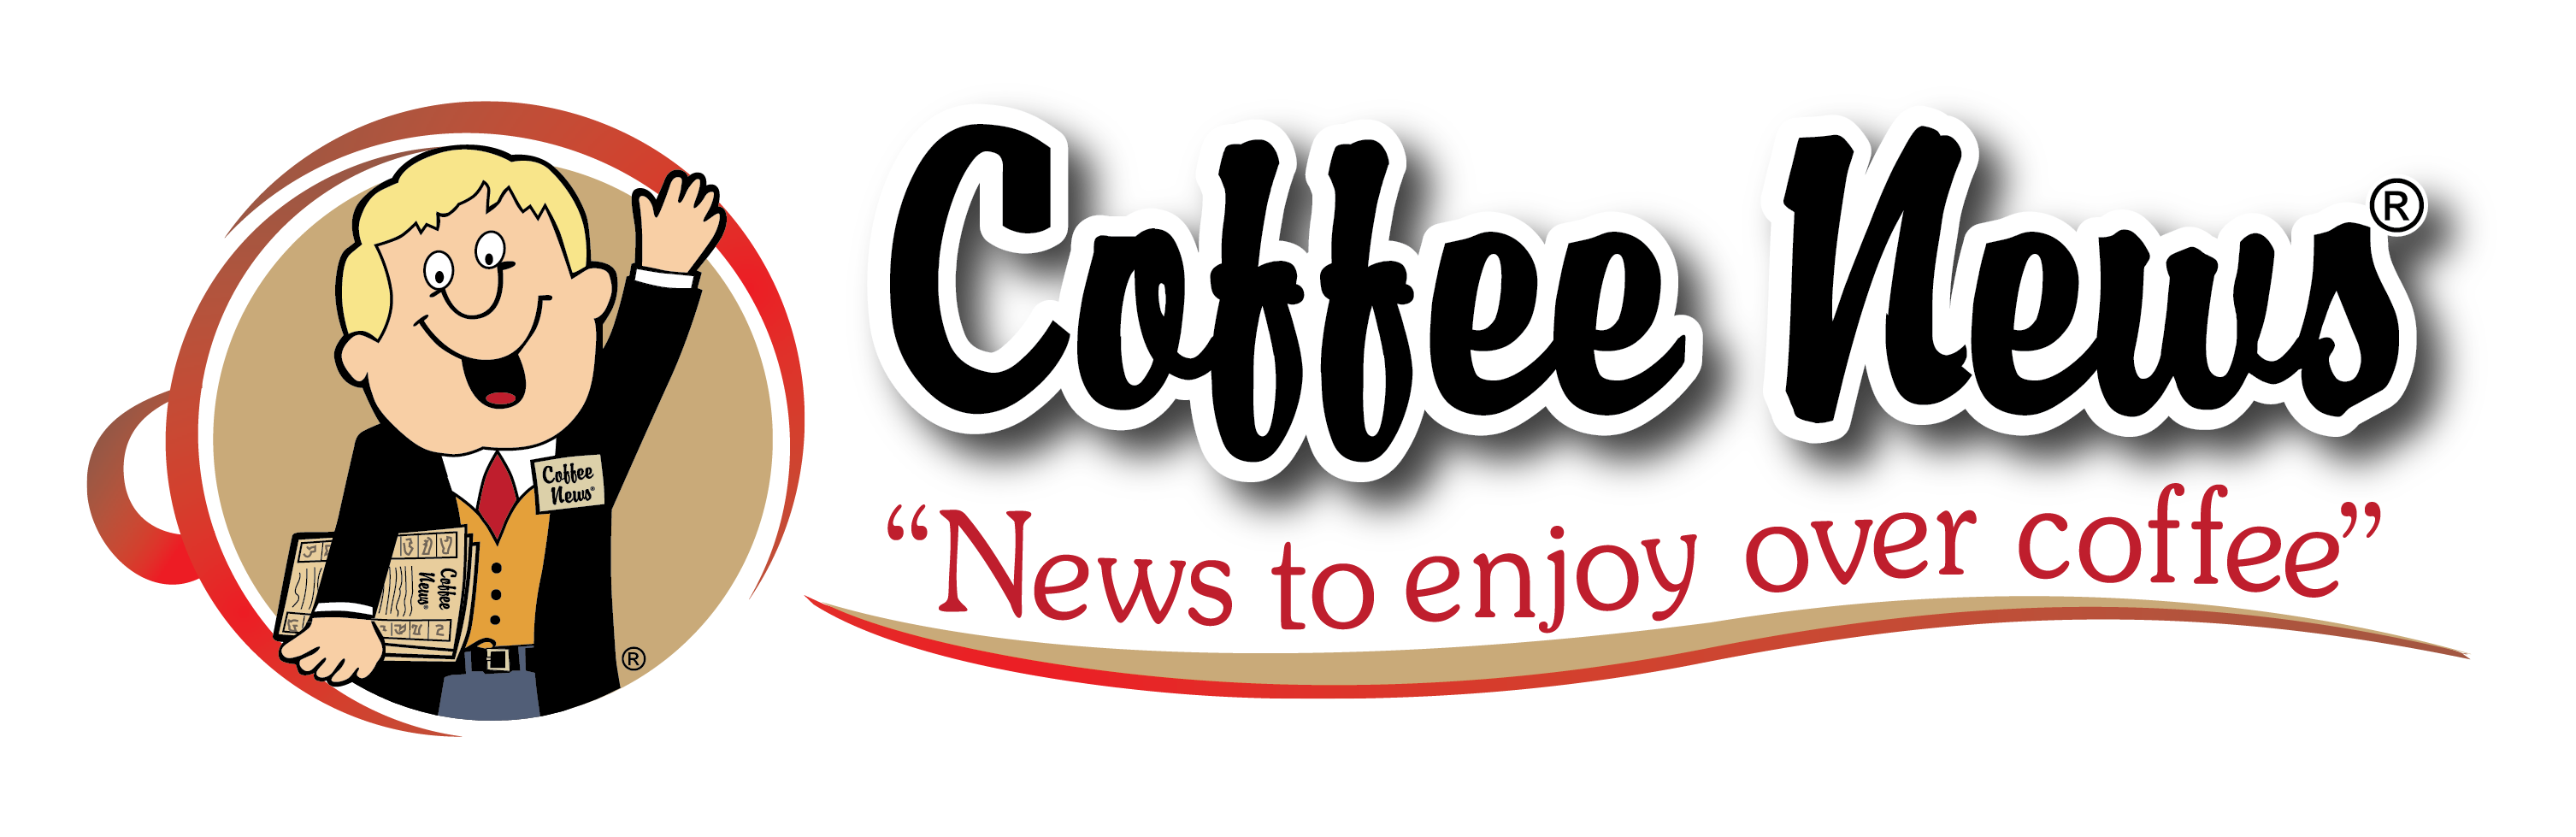 coffee news